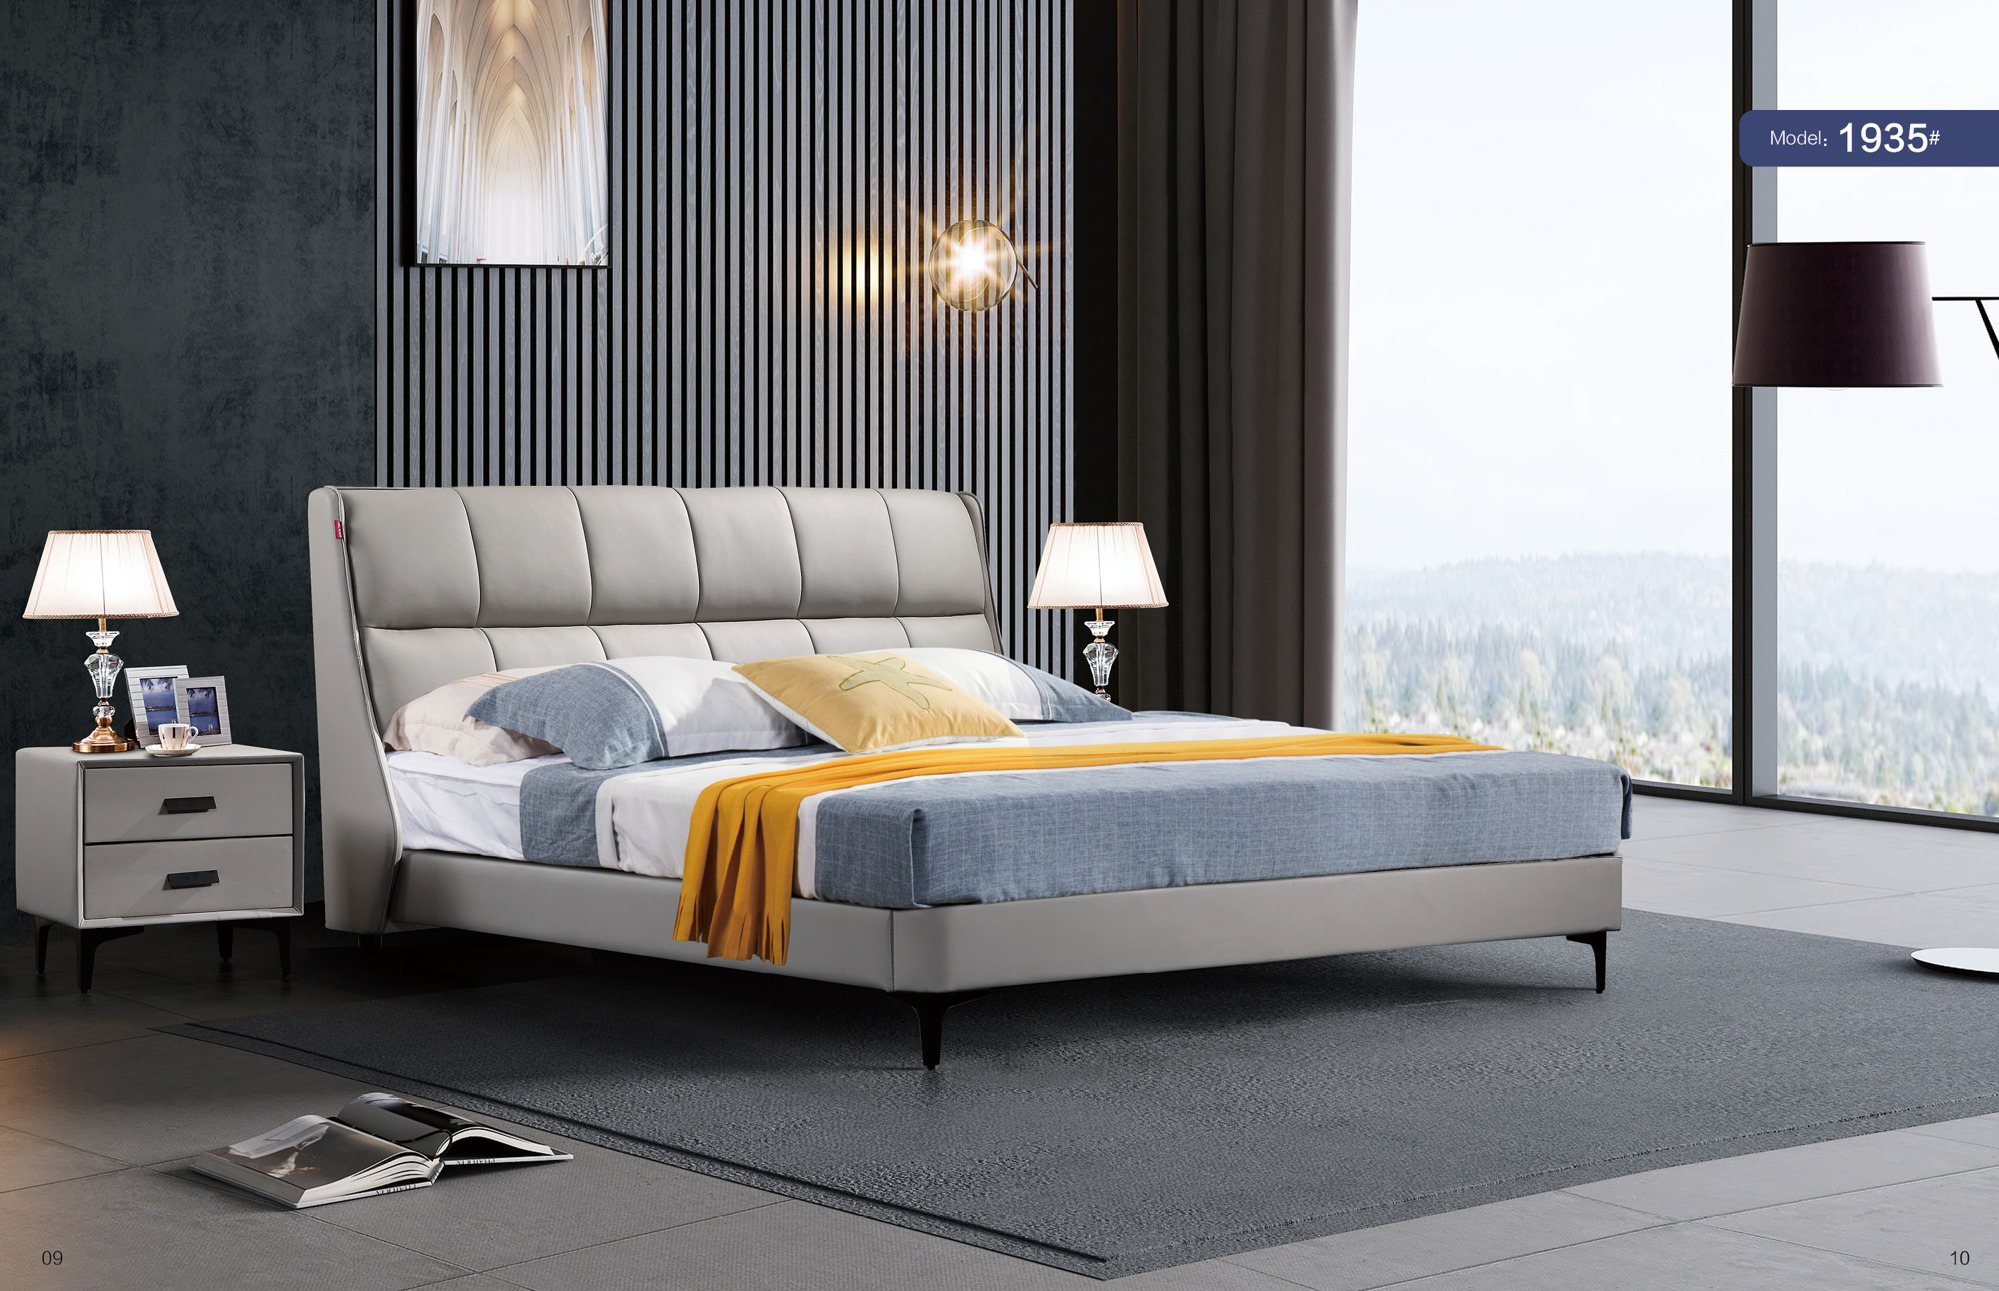 2021新款软床沙发展示